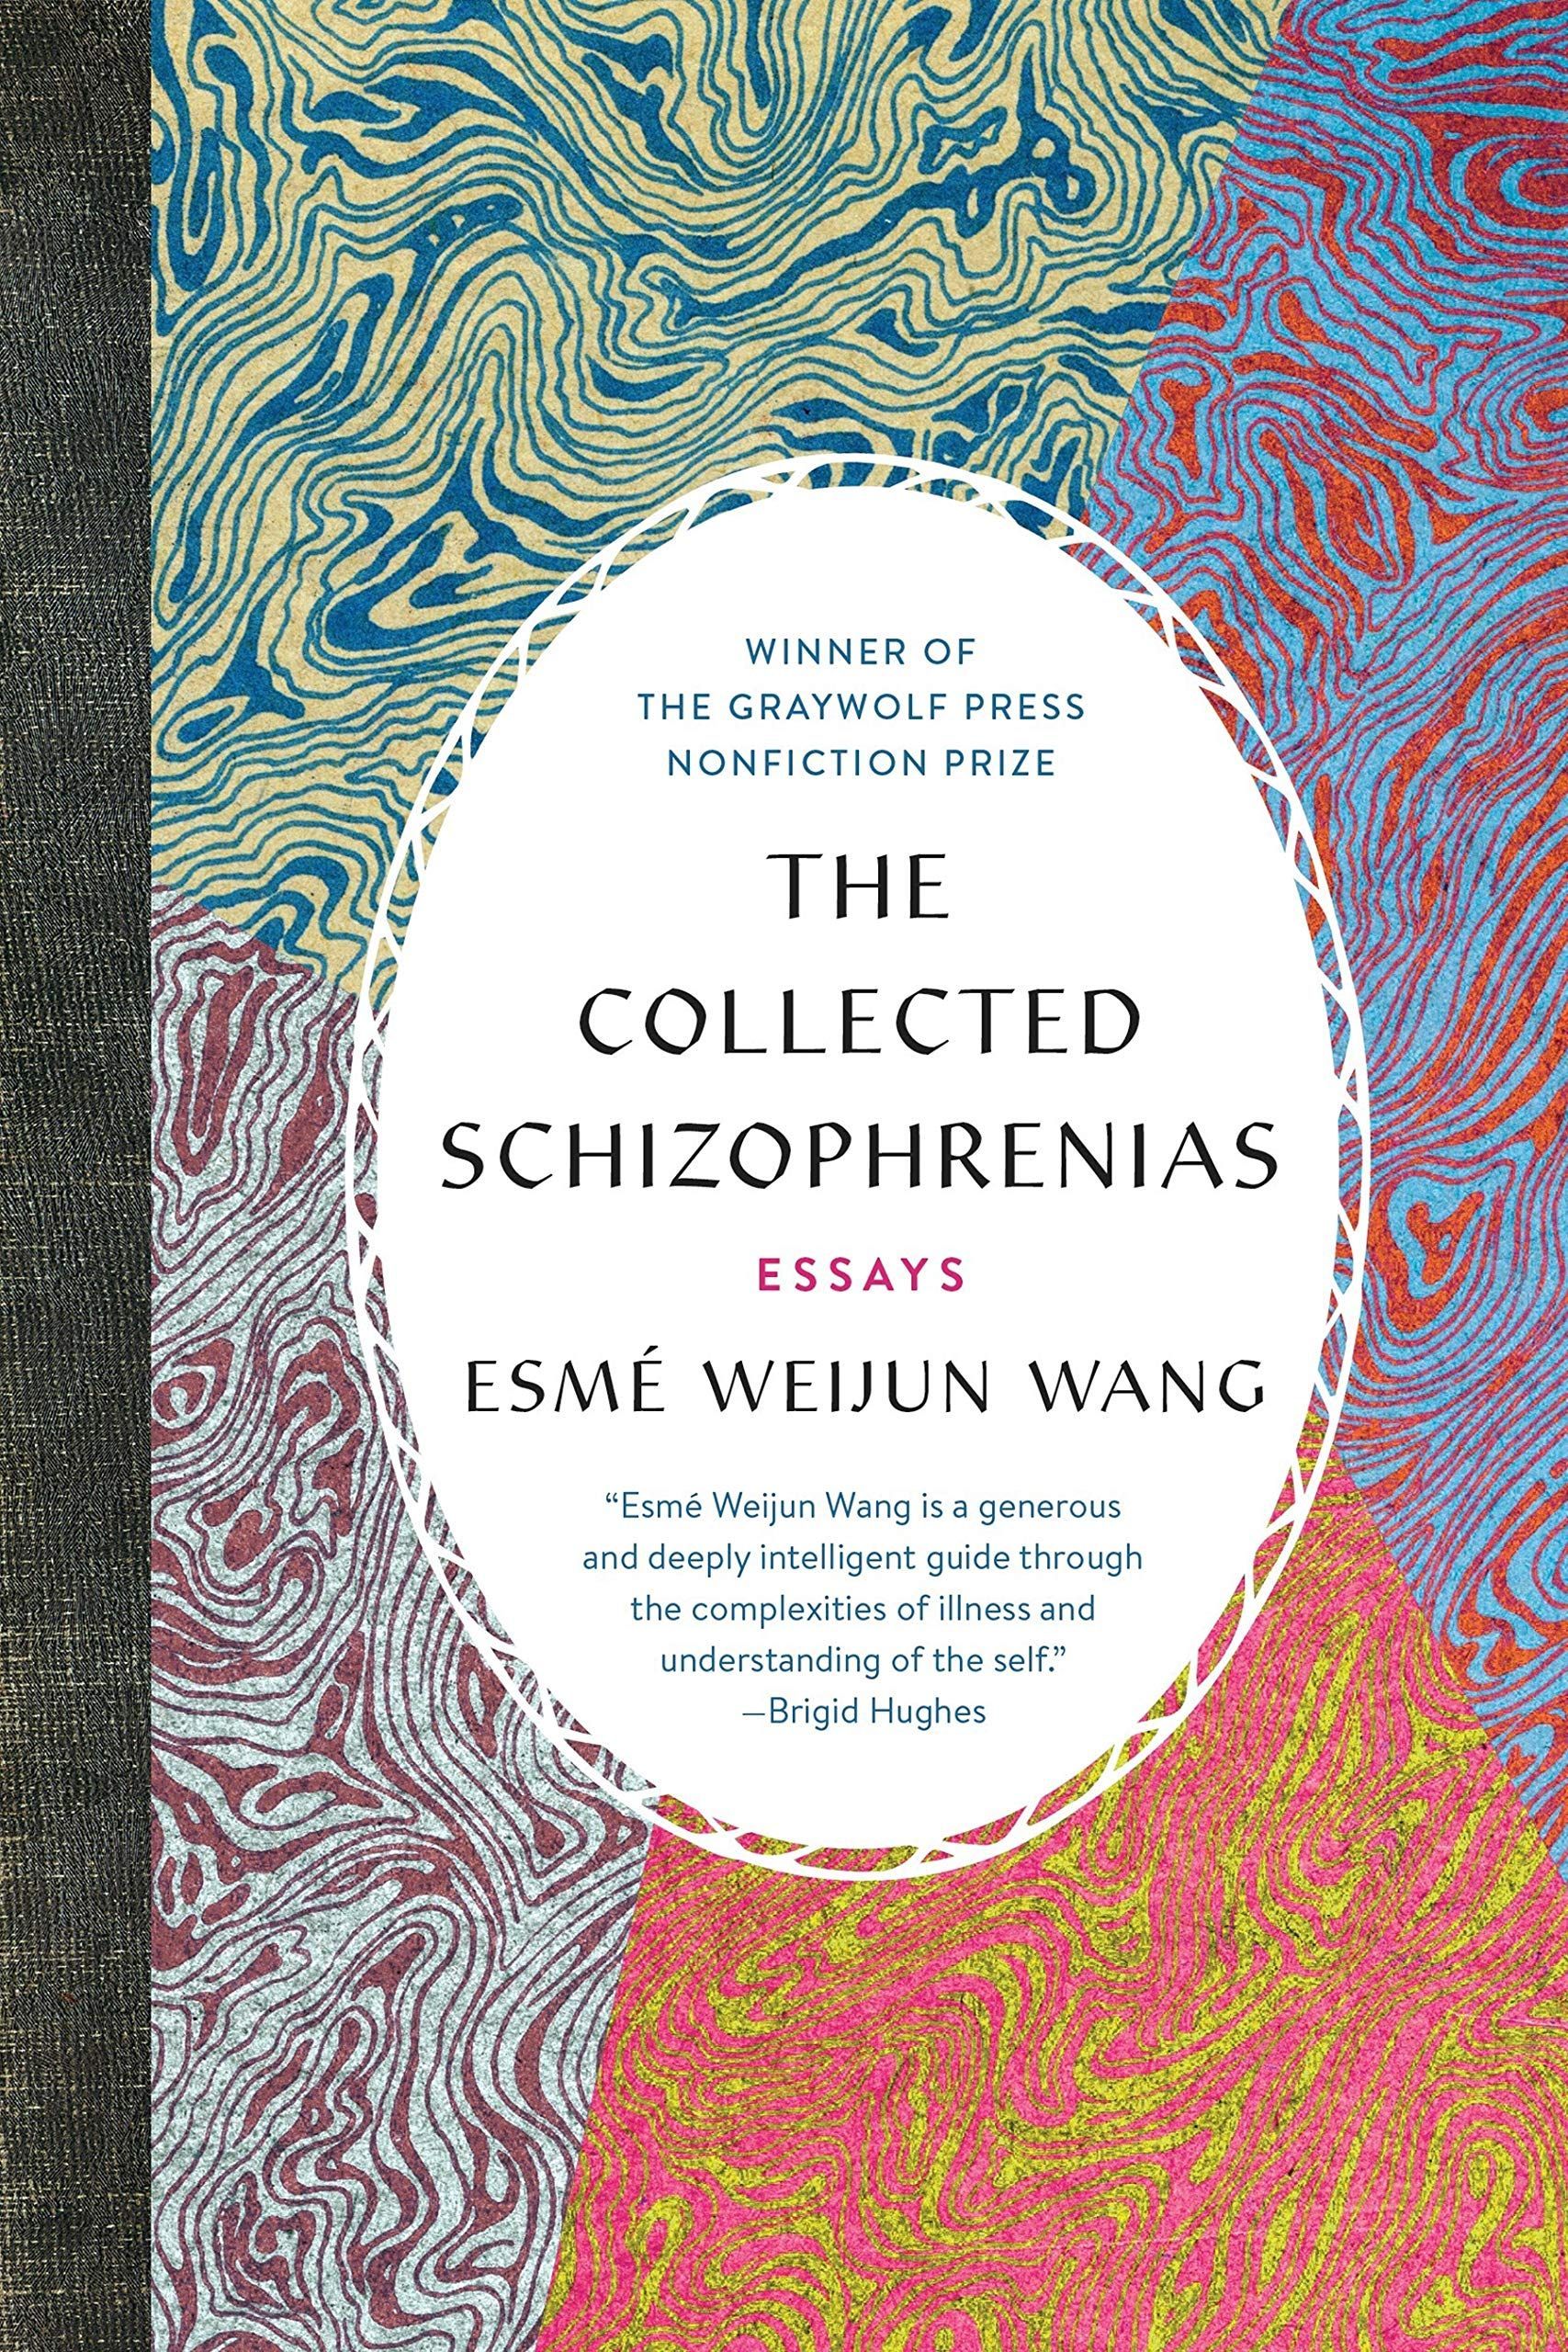 Fractured Origins in Esmé Weijun Wang’s “The Collected Schizophrenias”